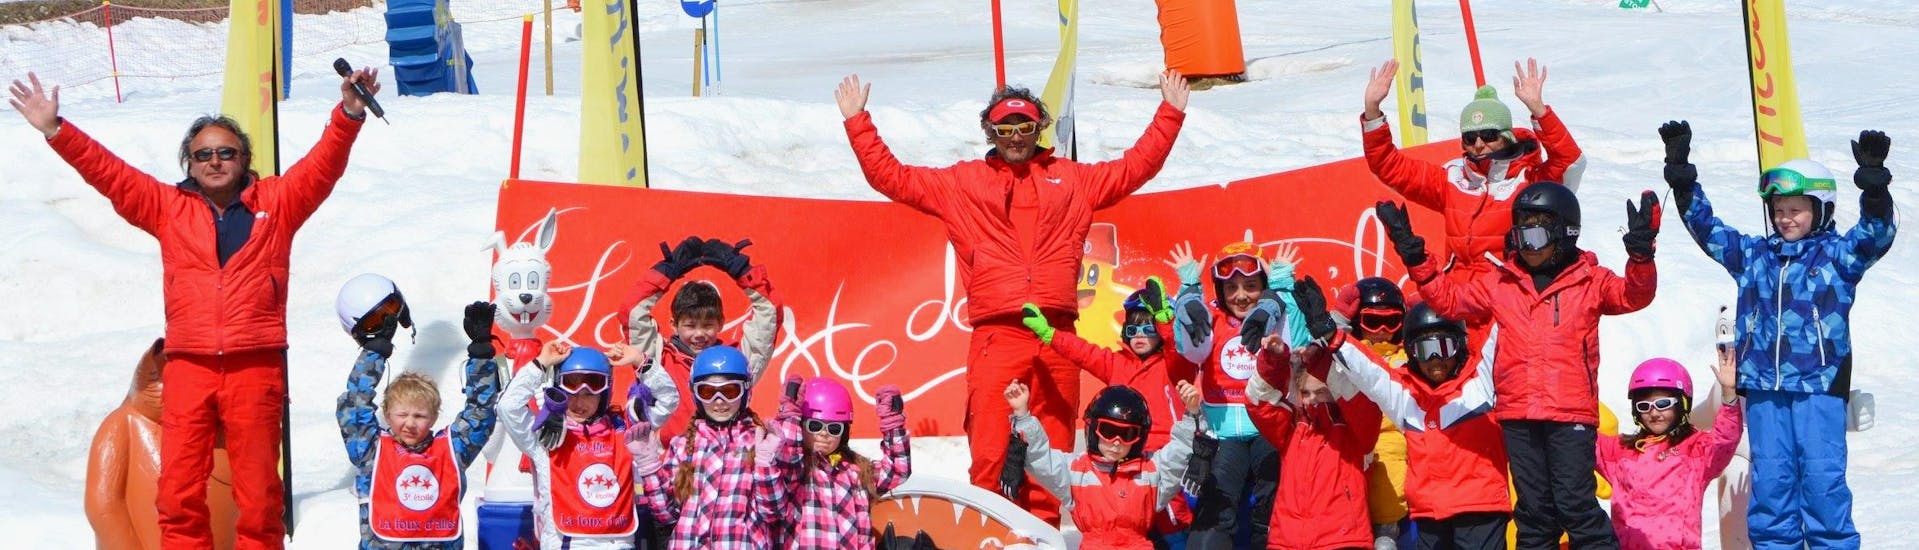 Clases de esquí para niños a partir de 4 años con experiencia.